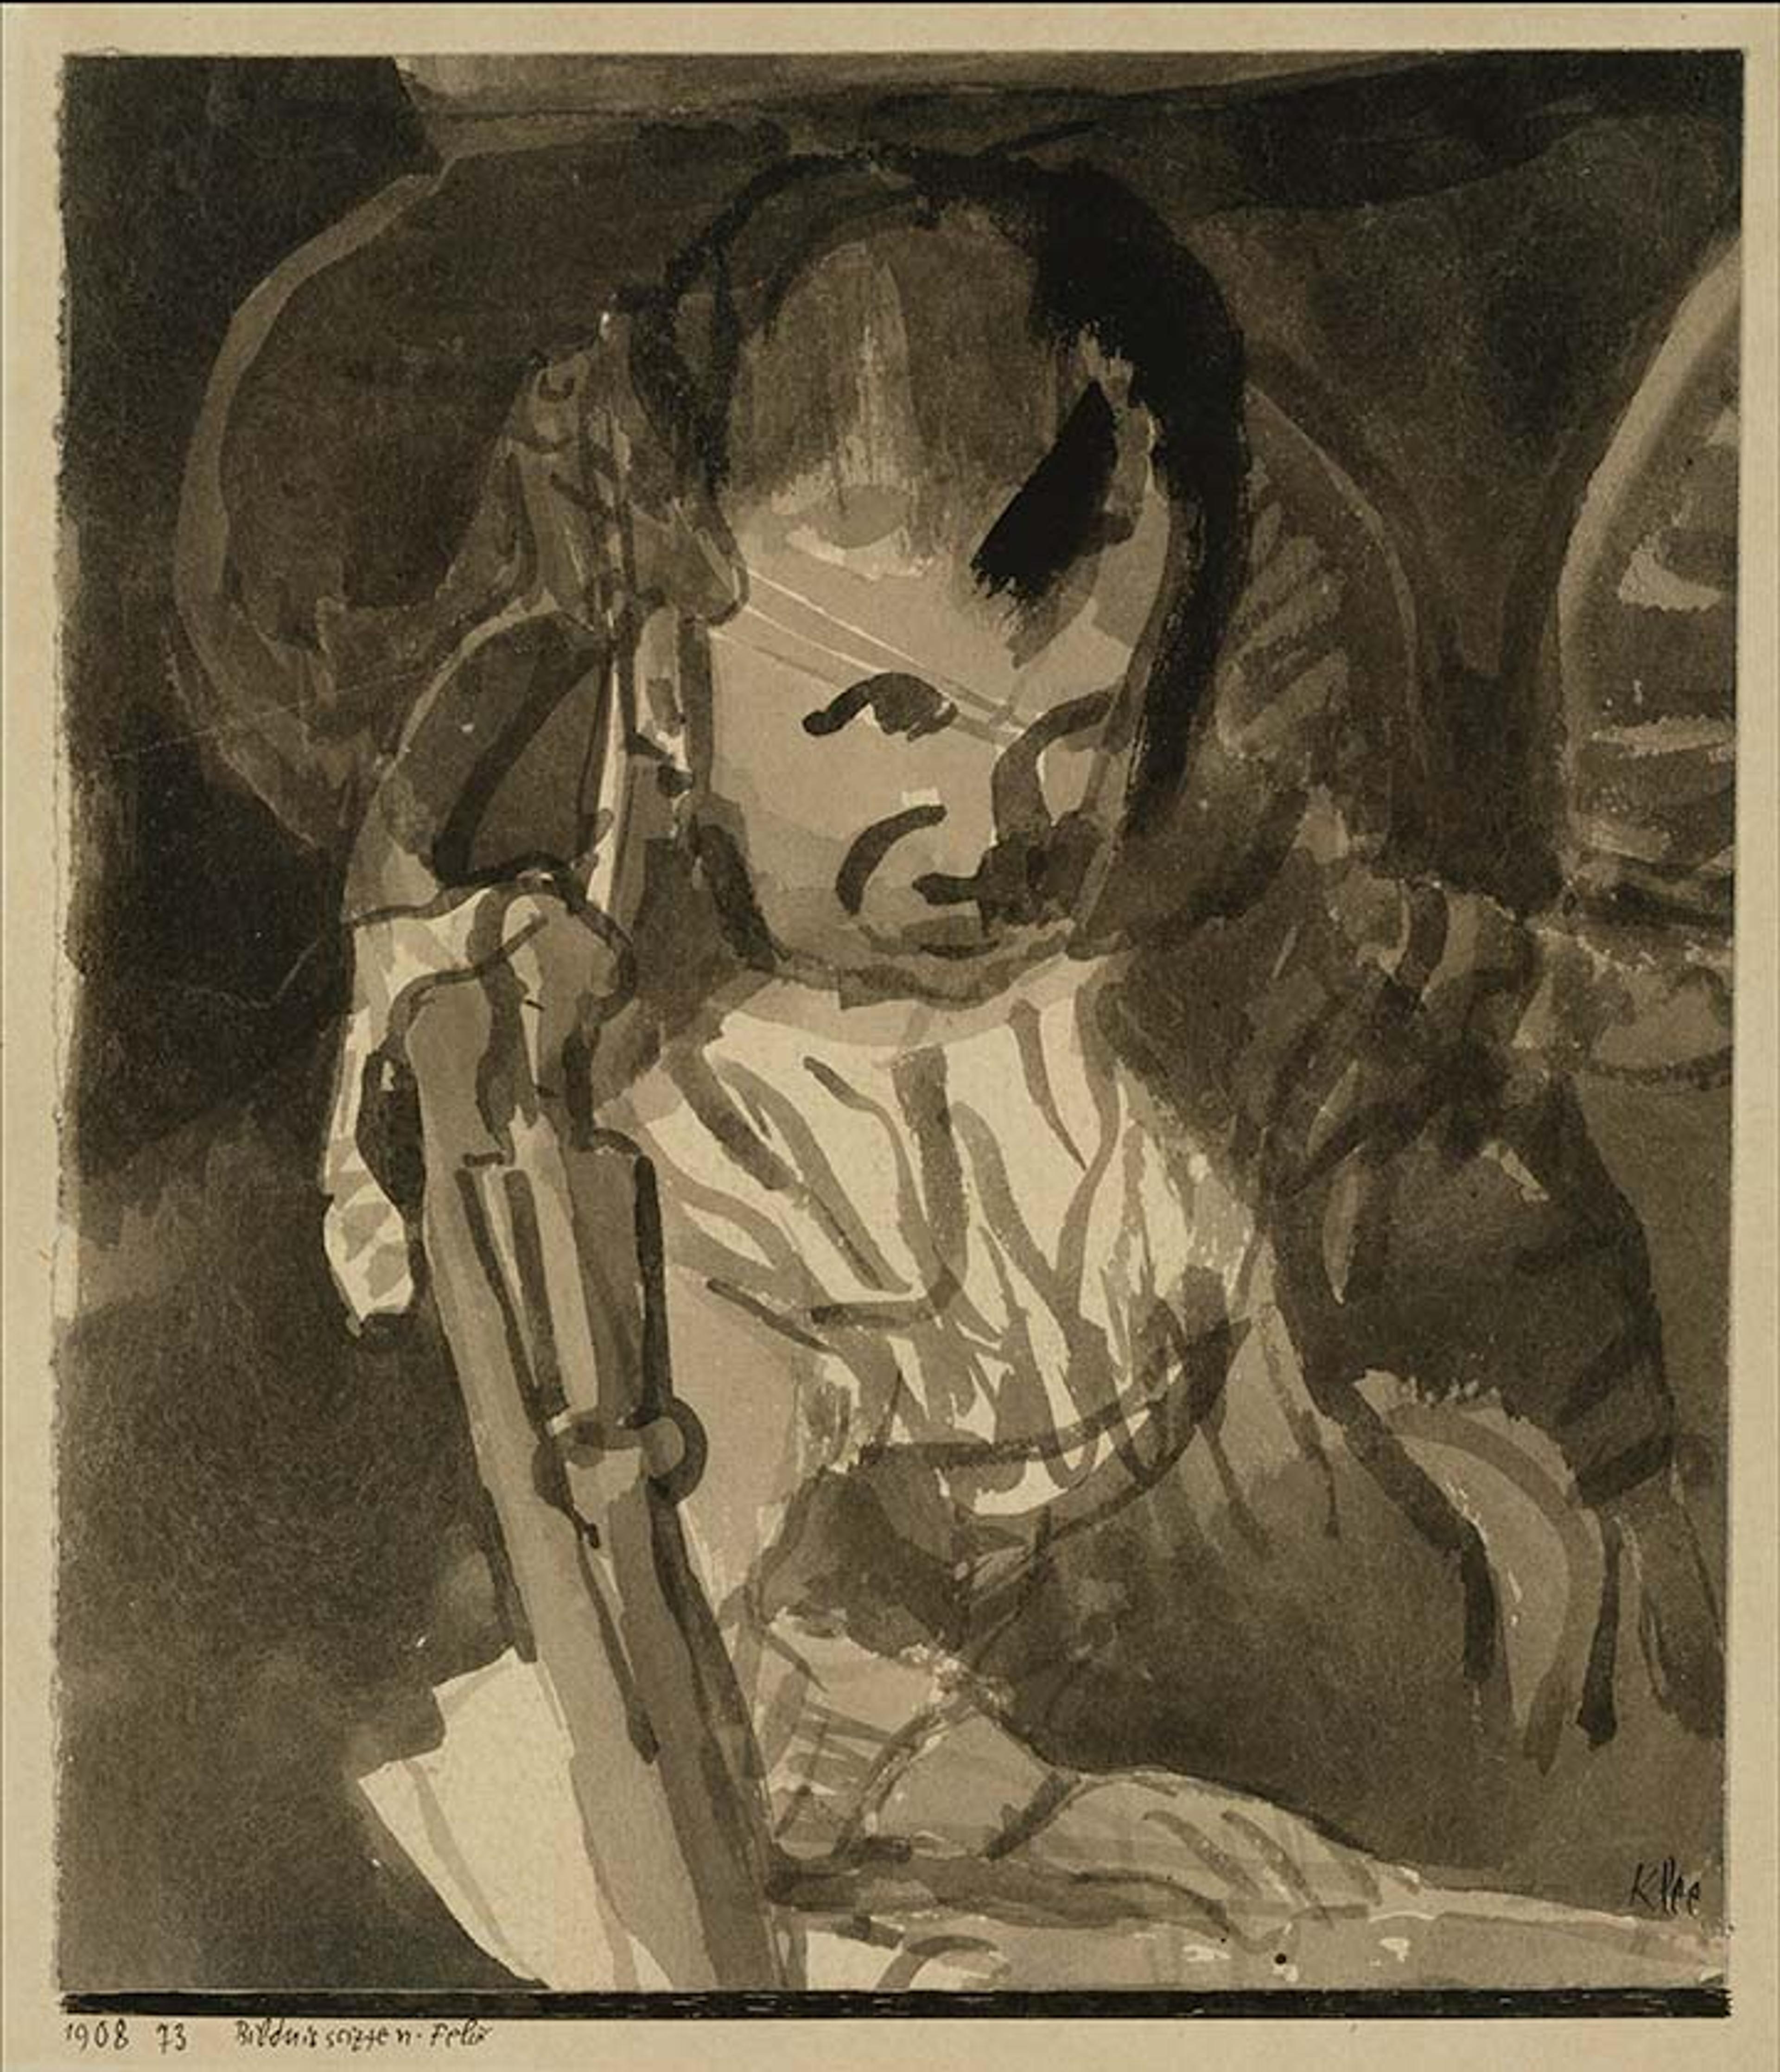 Sketch of Felix Klee